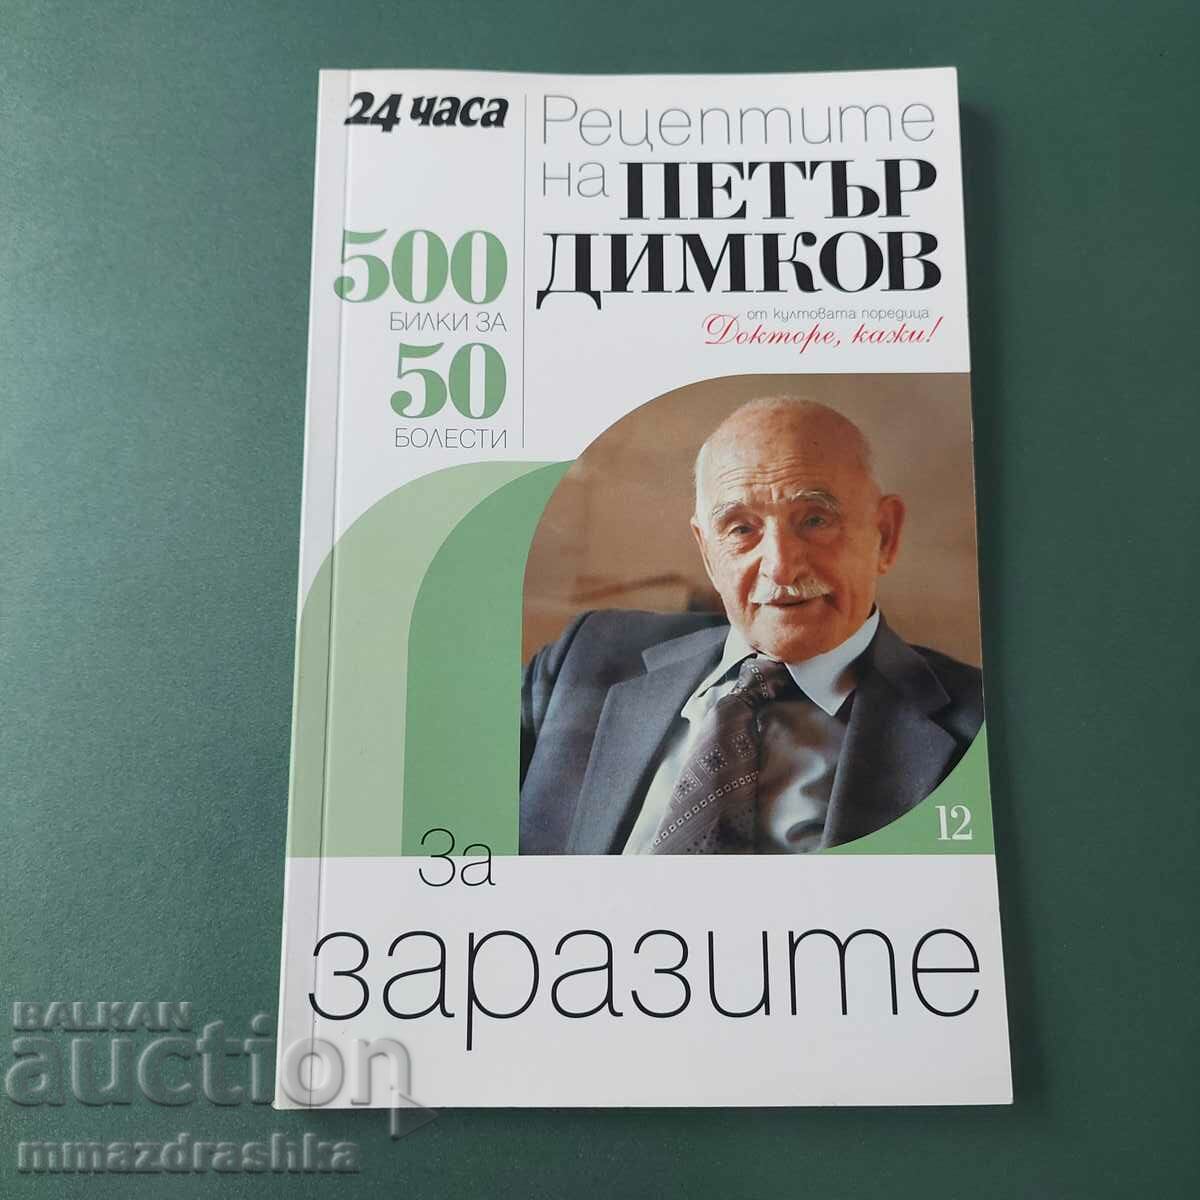 500 συνταγές για αποθήκευση, Petar Dimkov